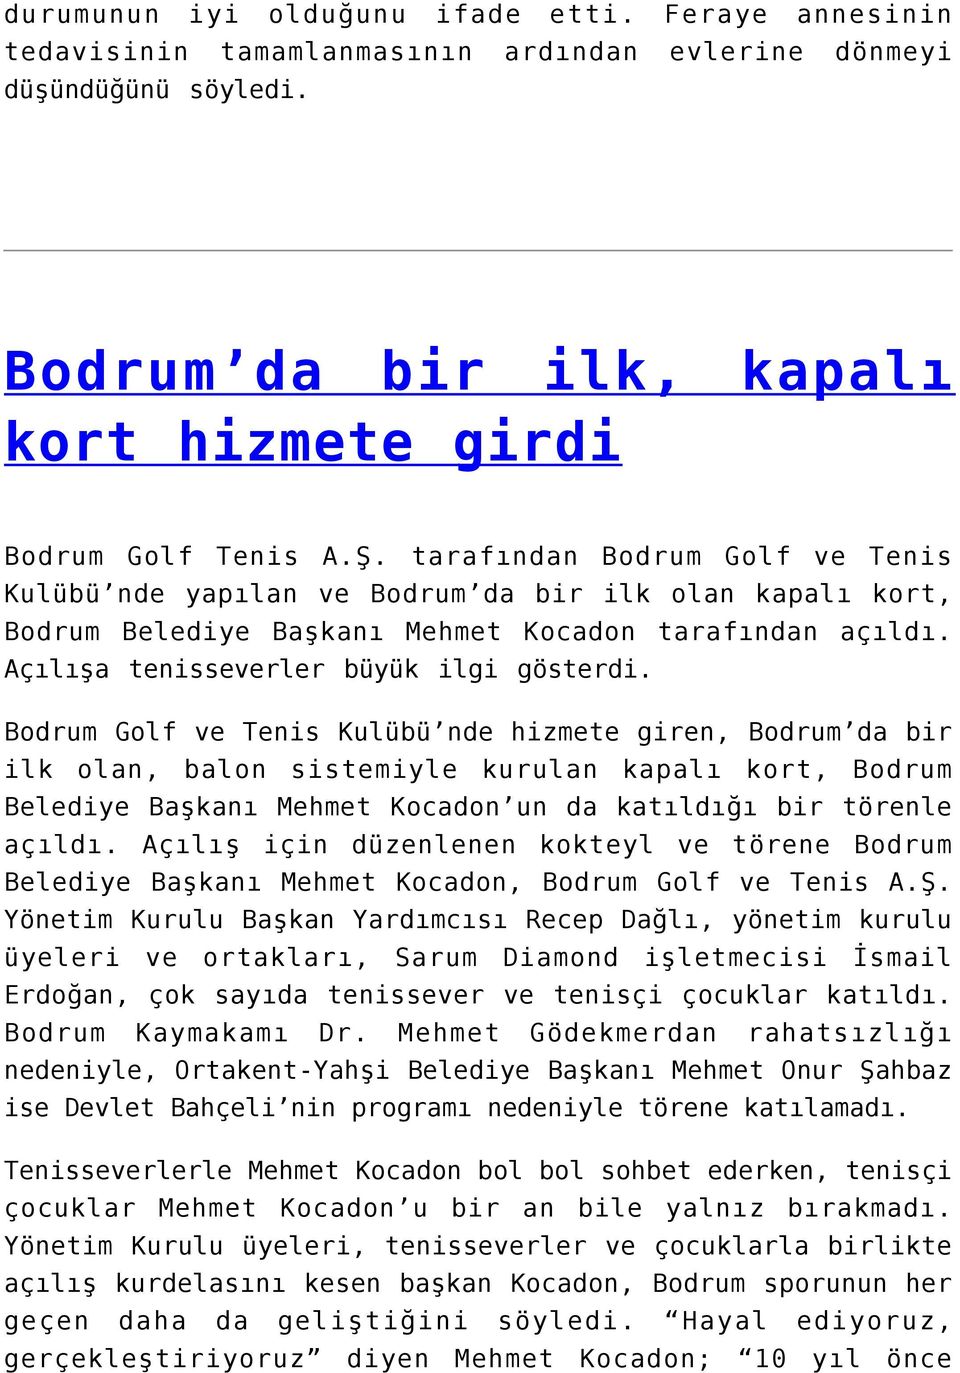 Bodrum Golf ve Tenis Kulübü nde hizmete giren, Bodrum da bir ilk olan, balon sistemiyle kurulan kapalı kort, Bodrum Belediye Başkanı Mehmet Kocadon un da katıldığı bir törenle açıldı.